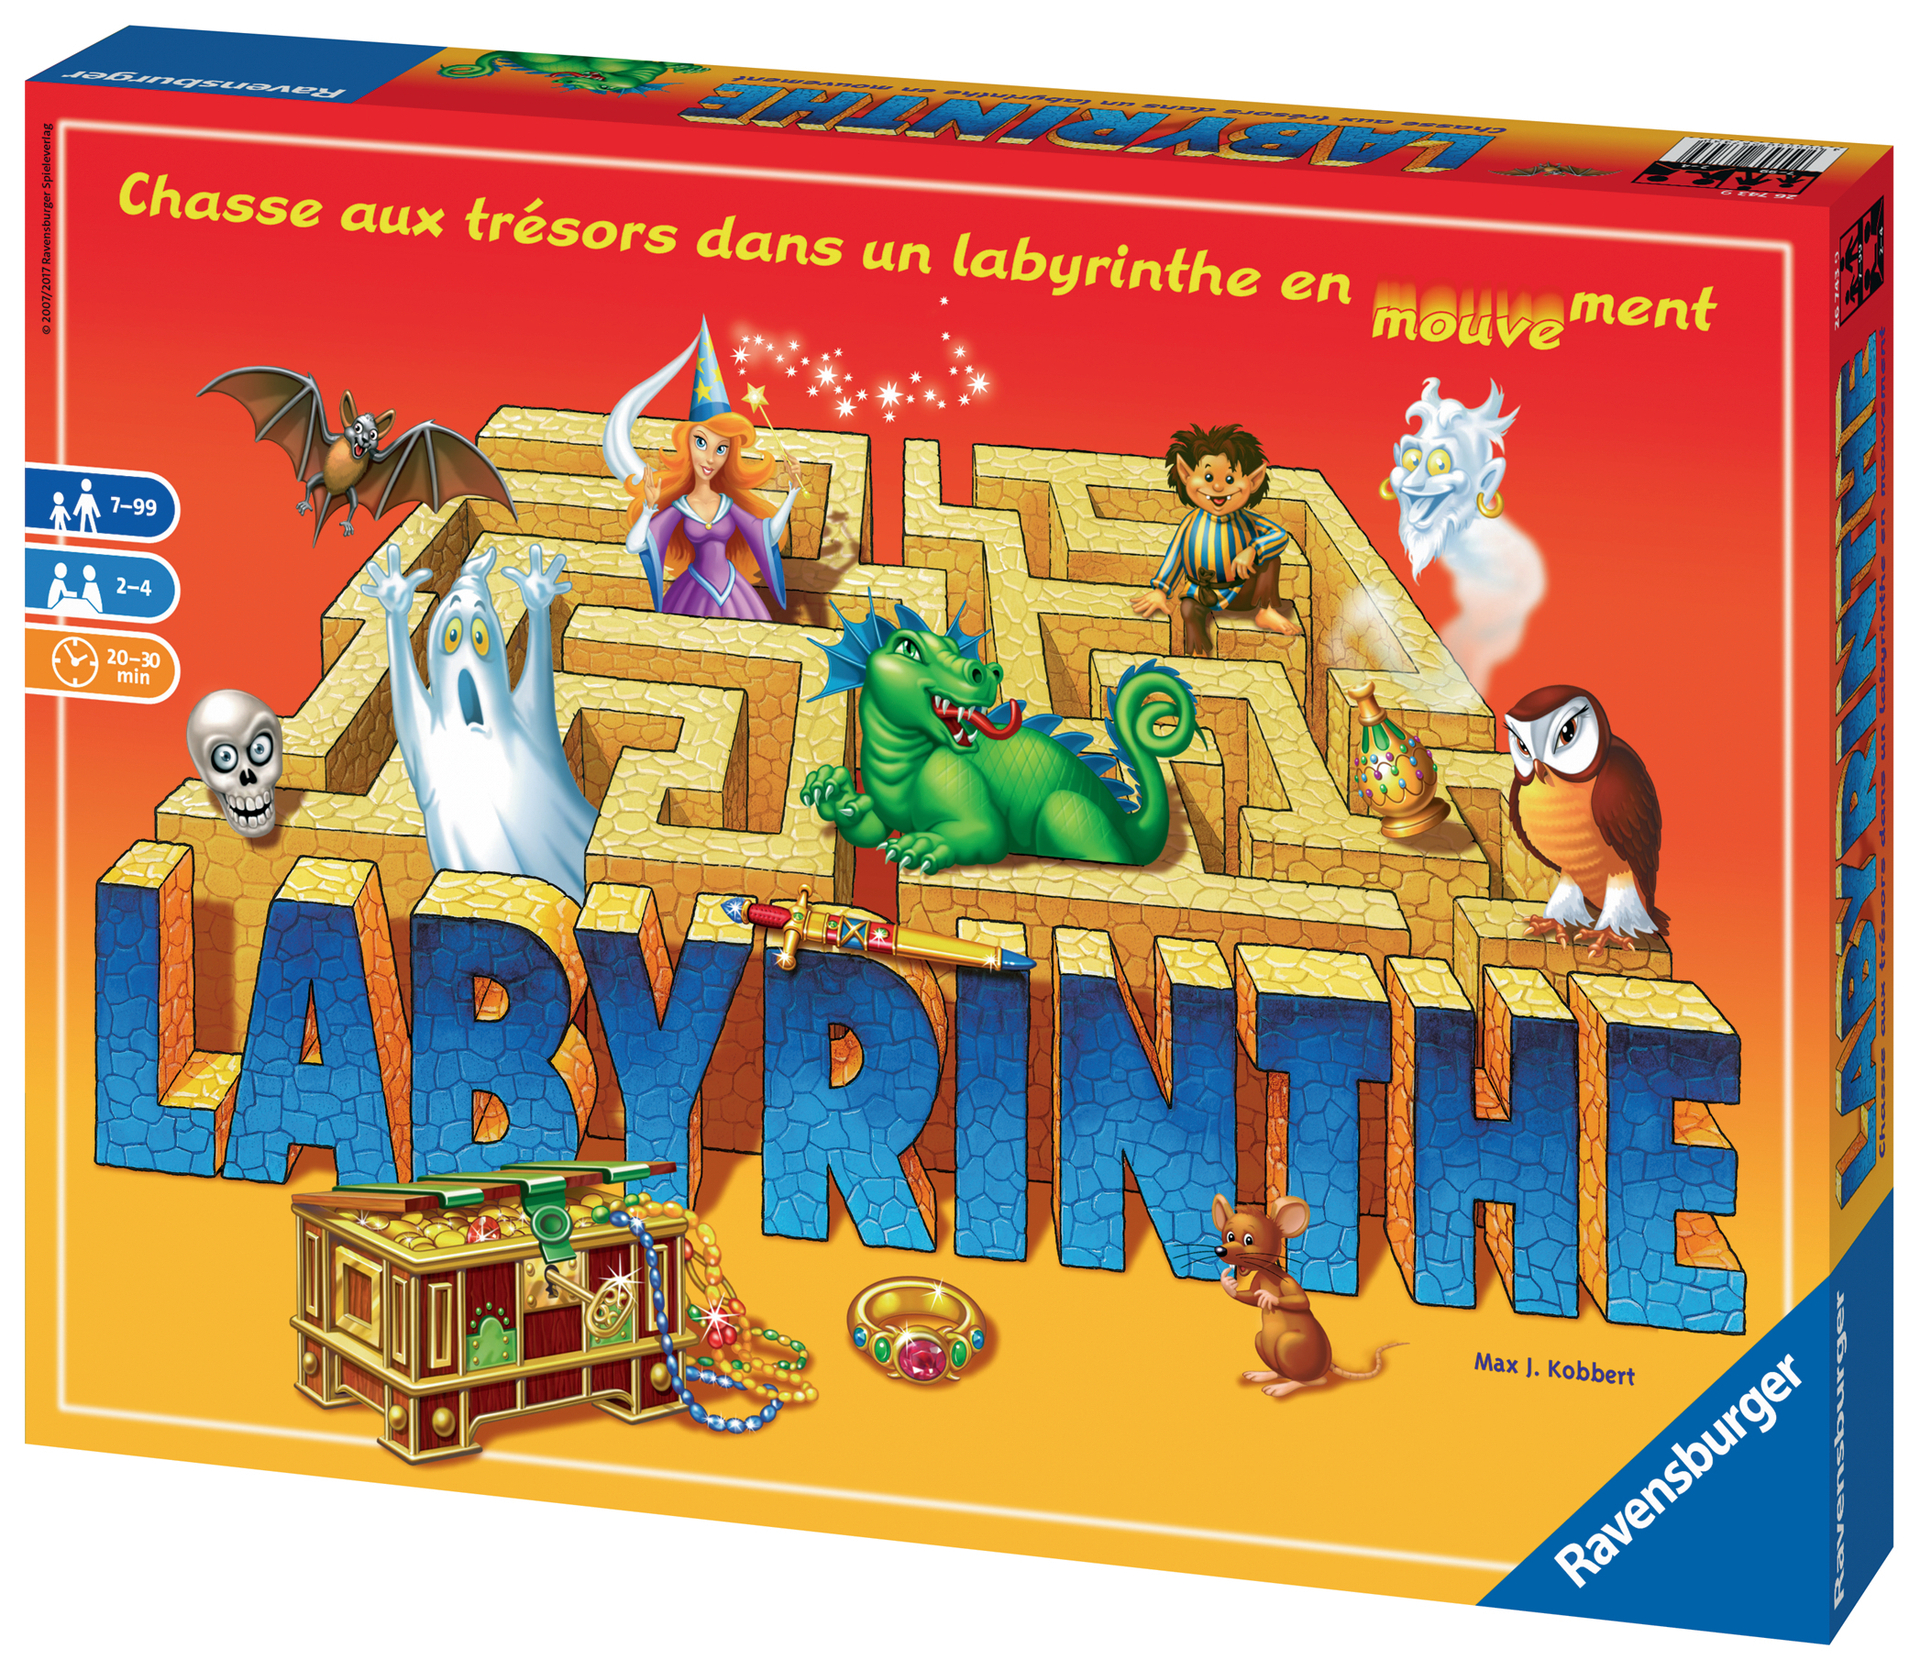 Labyrinthe Disney 100 ans Ravensburger : King Jouet, Jeux d'ambiance  Ravensburger - Jeux de société